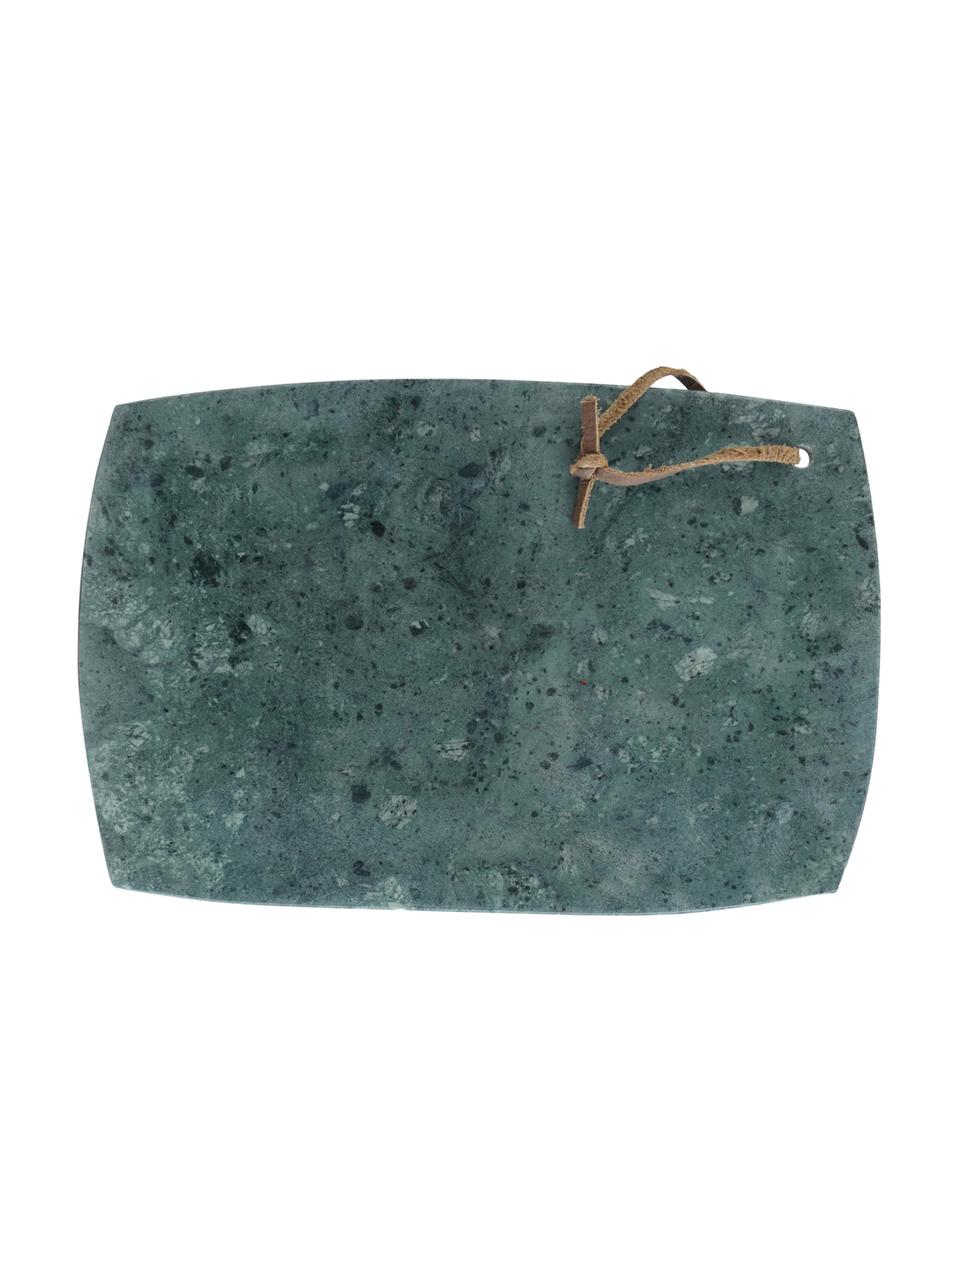 Deska do krojenia Chopchop, Kamień, Zielony, S 20 x D 30 cm